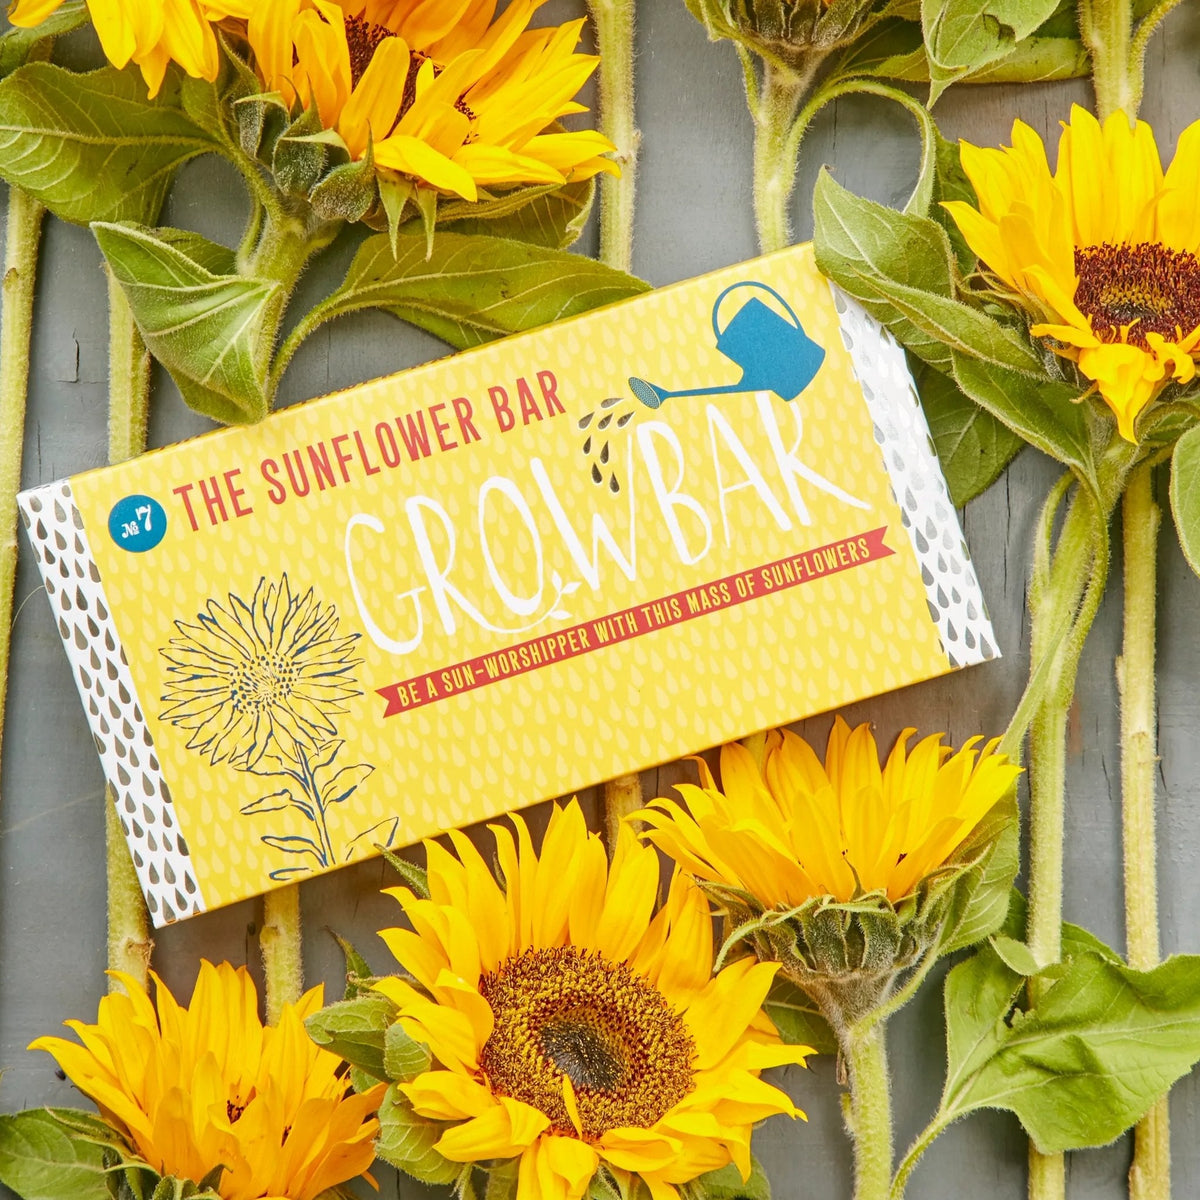 The Sunflower Growbar - Boo•kay ldn